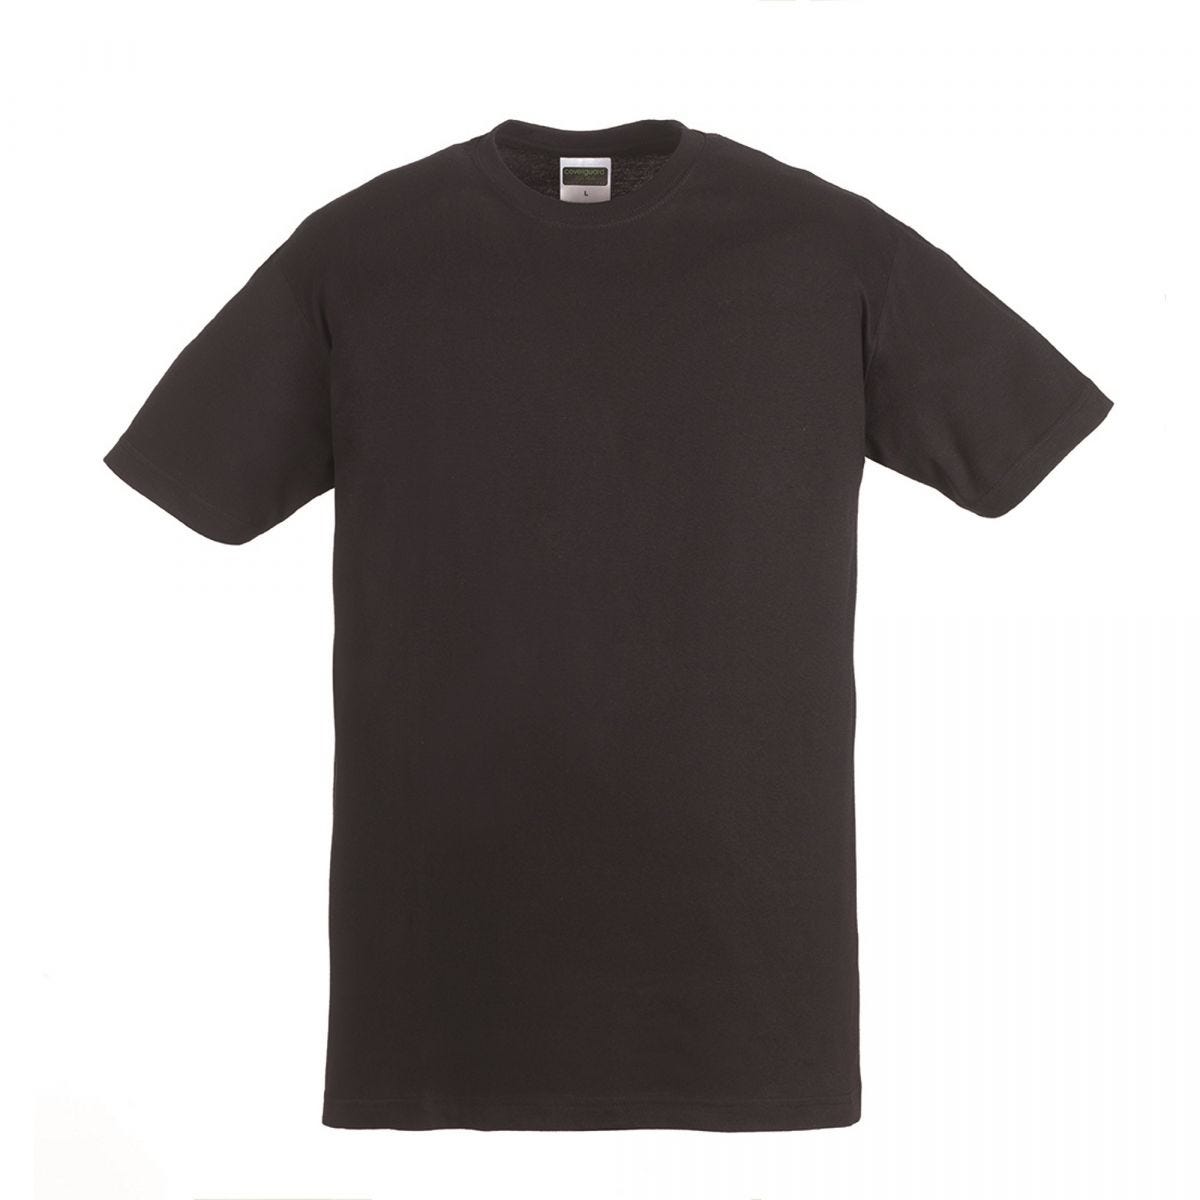 HIKE T-shirt MC noir, 100% coton, 190g/m² - COVERGUARD - Taille 2XL 0